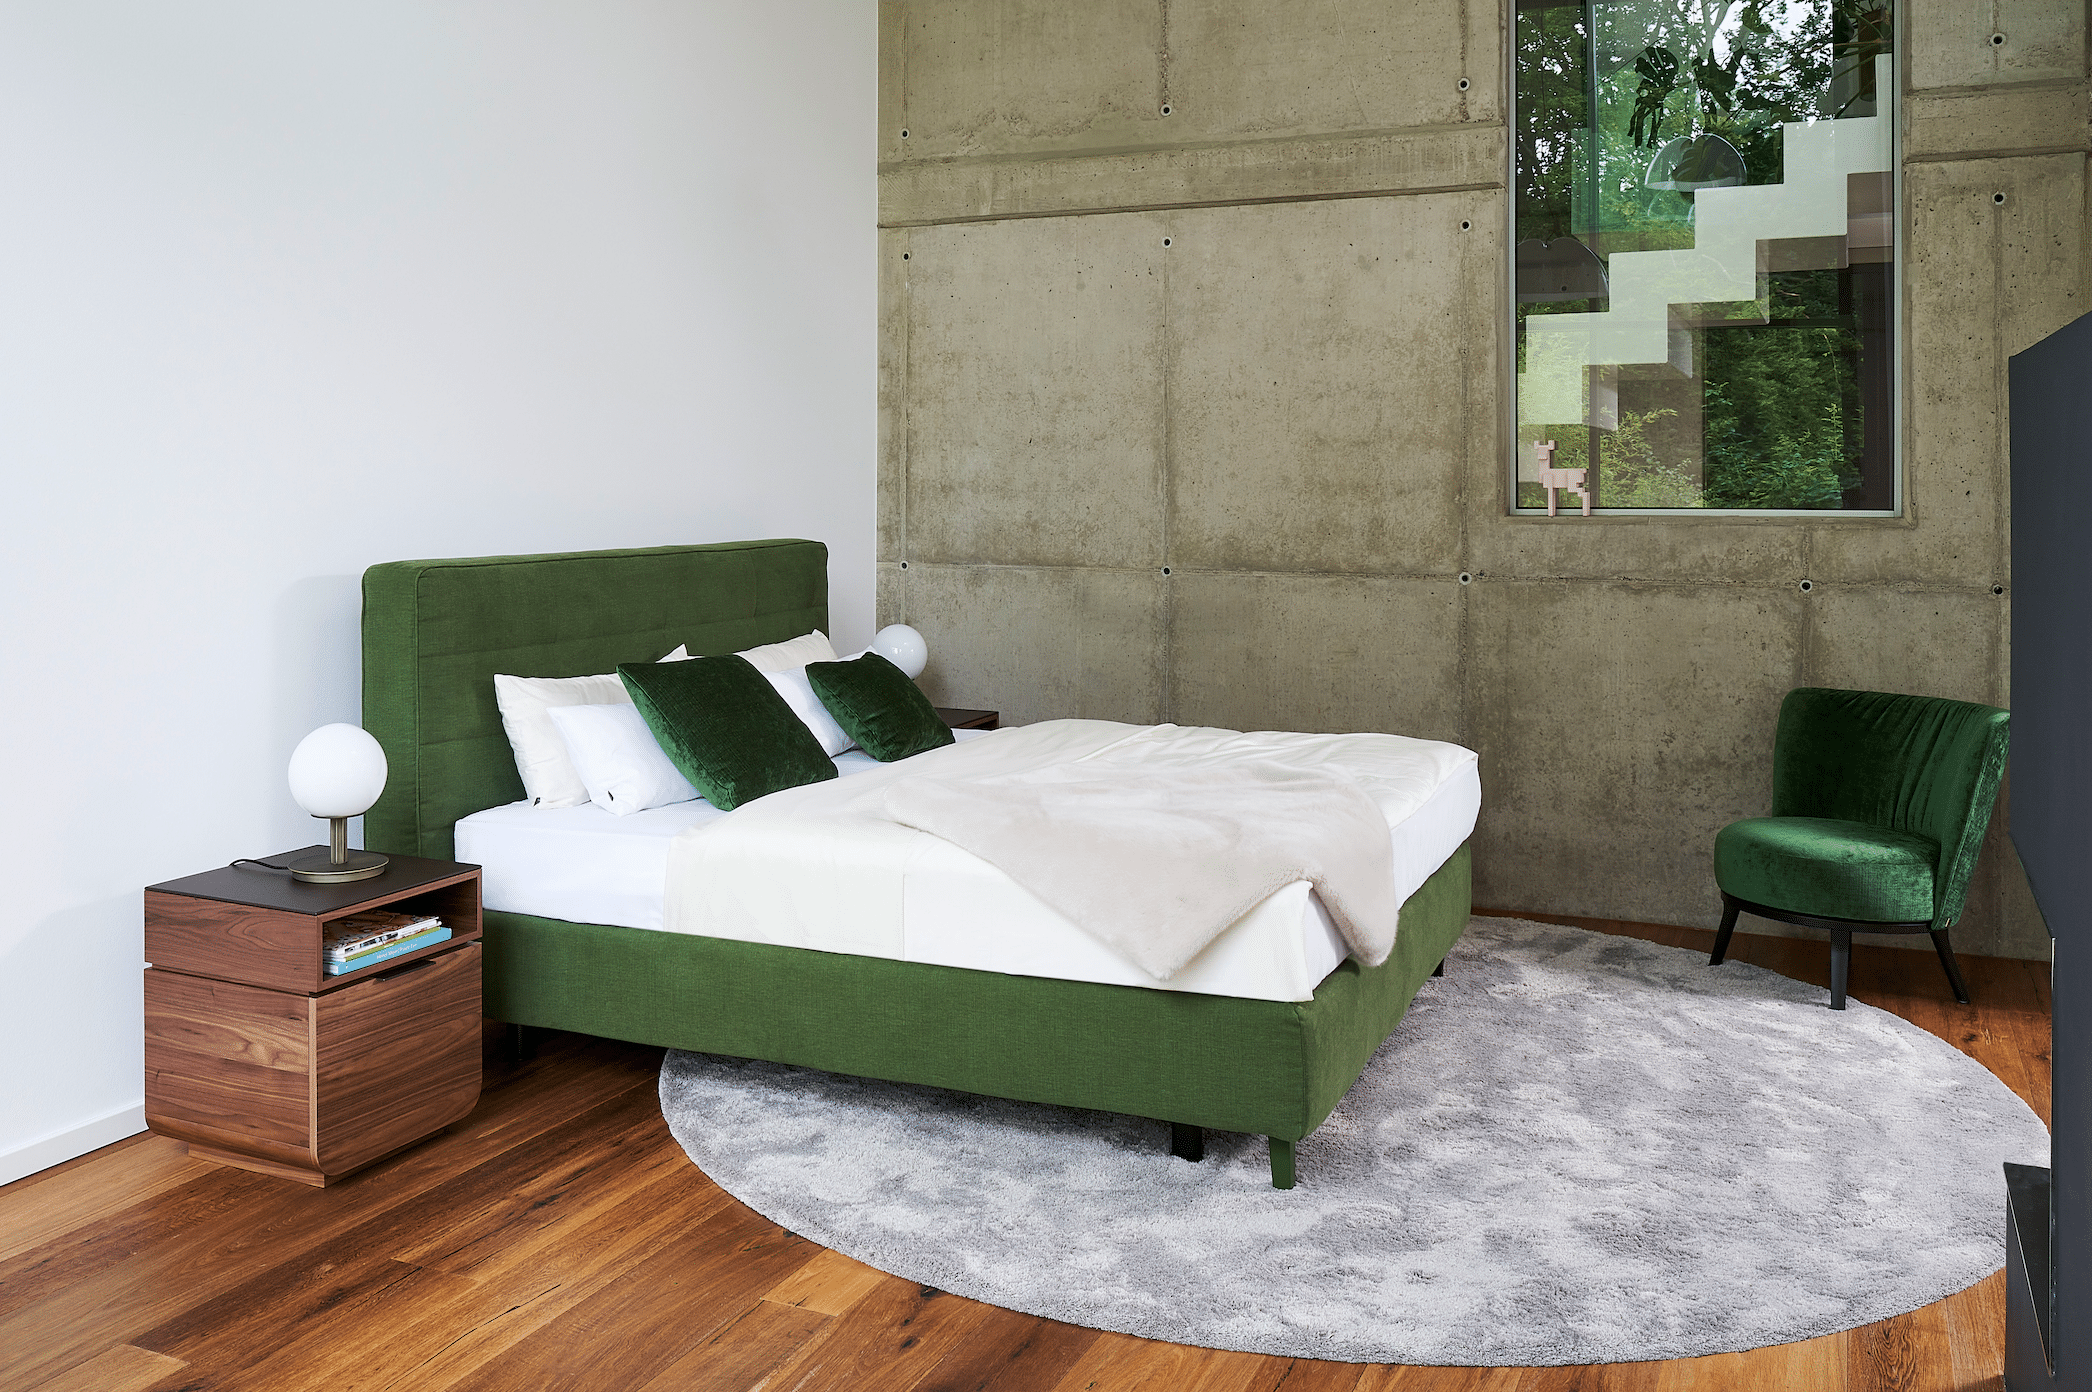 WOHNHAUS Grill & Ronacher zeigt ein Doppelbett in grün mit einem Nachtkästchen aus Holz und Ohrensessel aus Samt neben einer Wand im Industrial Look von Bielefelder Werkstätten.